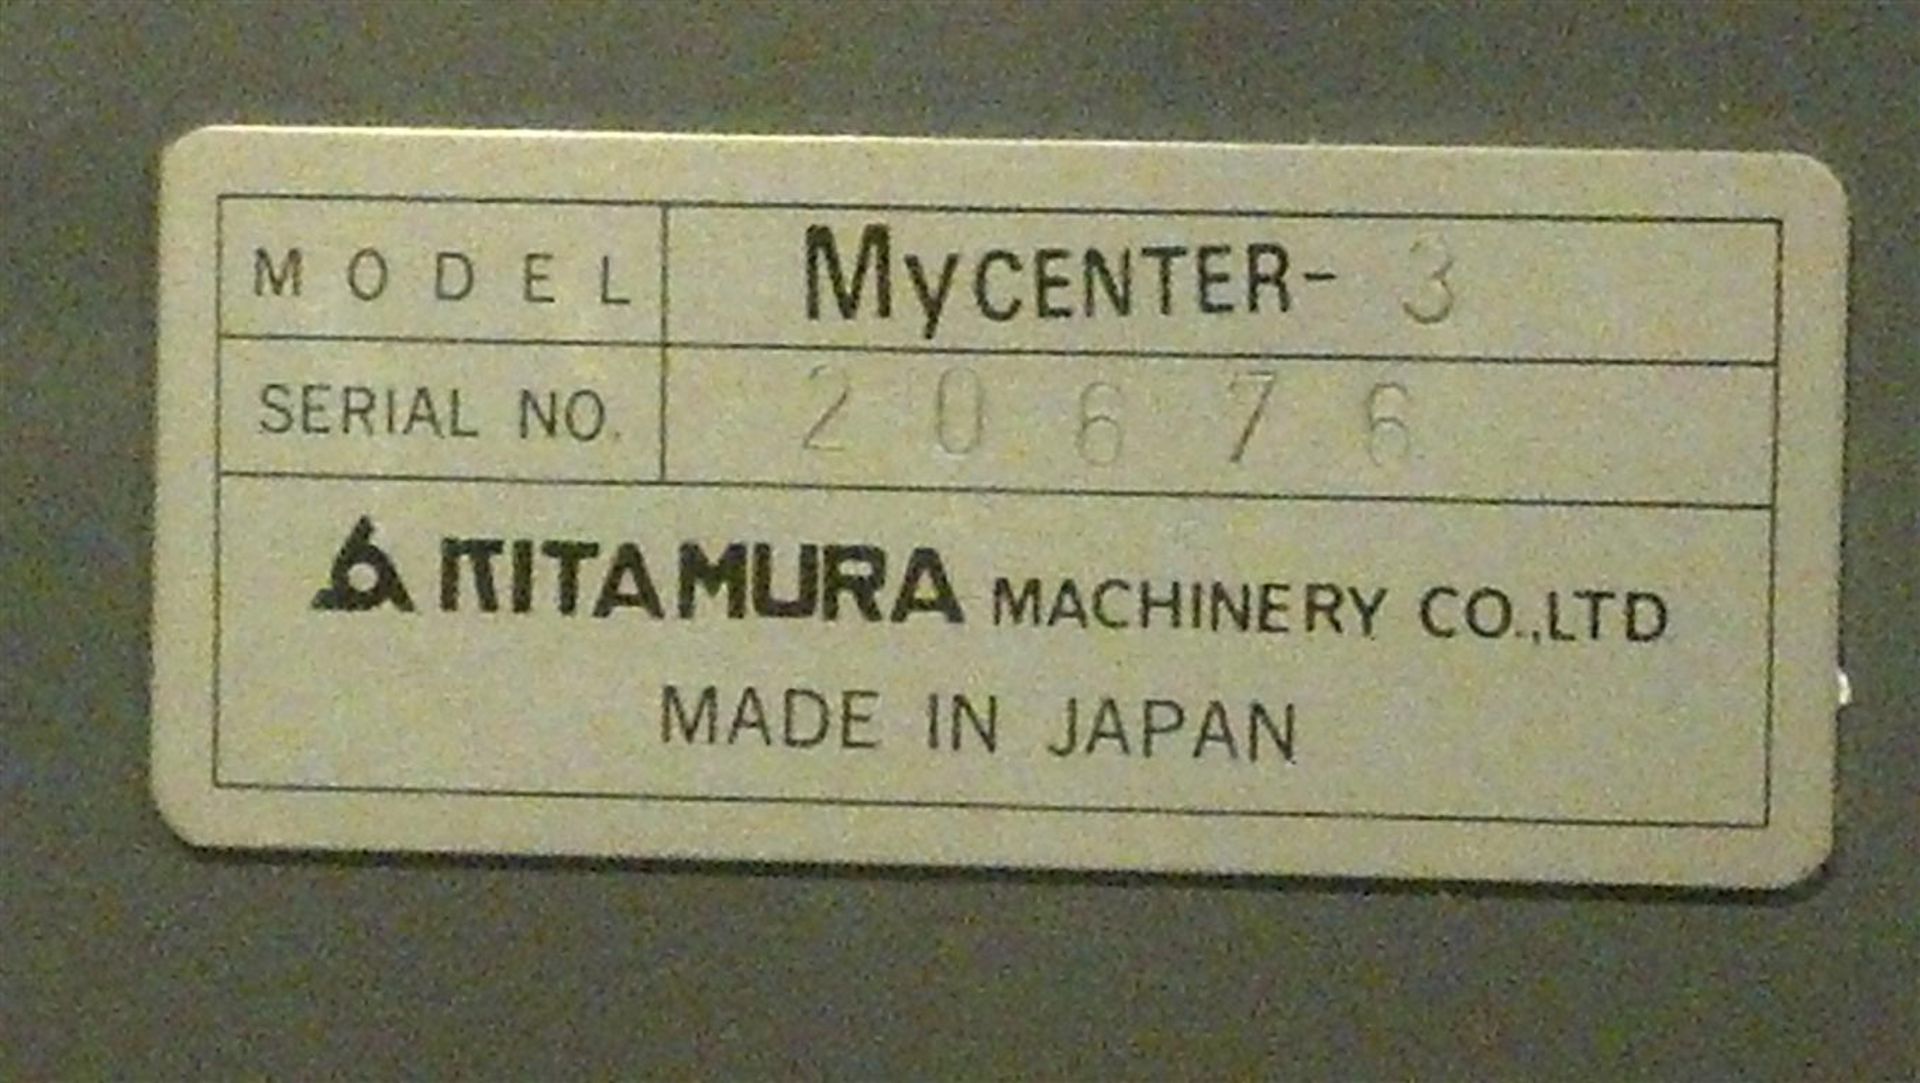 1987 Kitamura Mycenter 3 (Zip Code Location: 60143) - Image 2 of 5